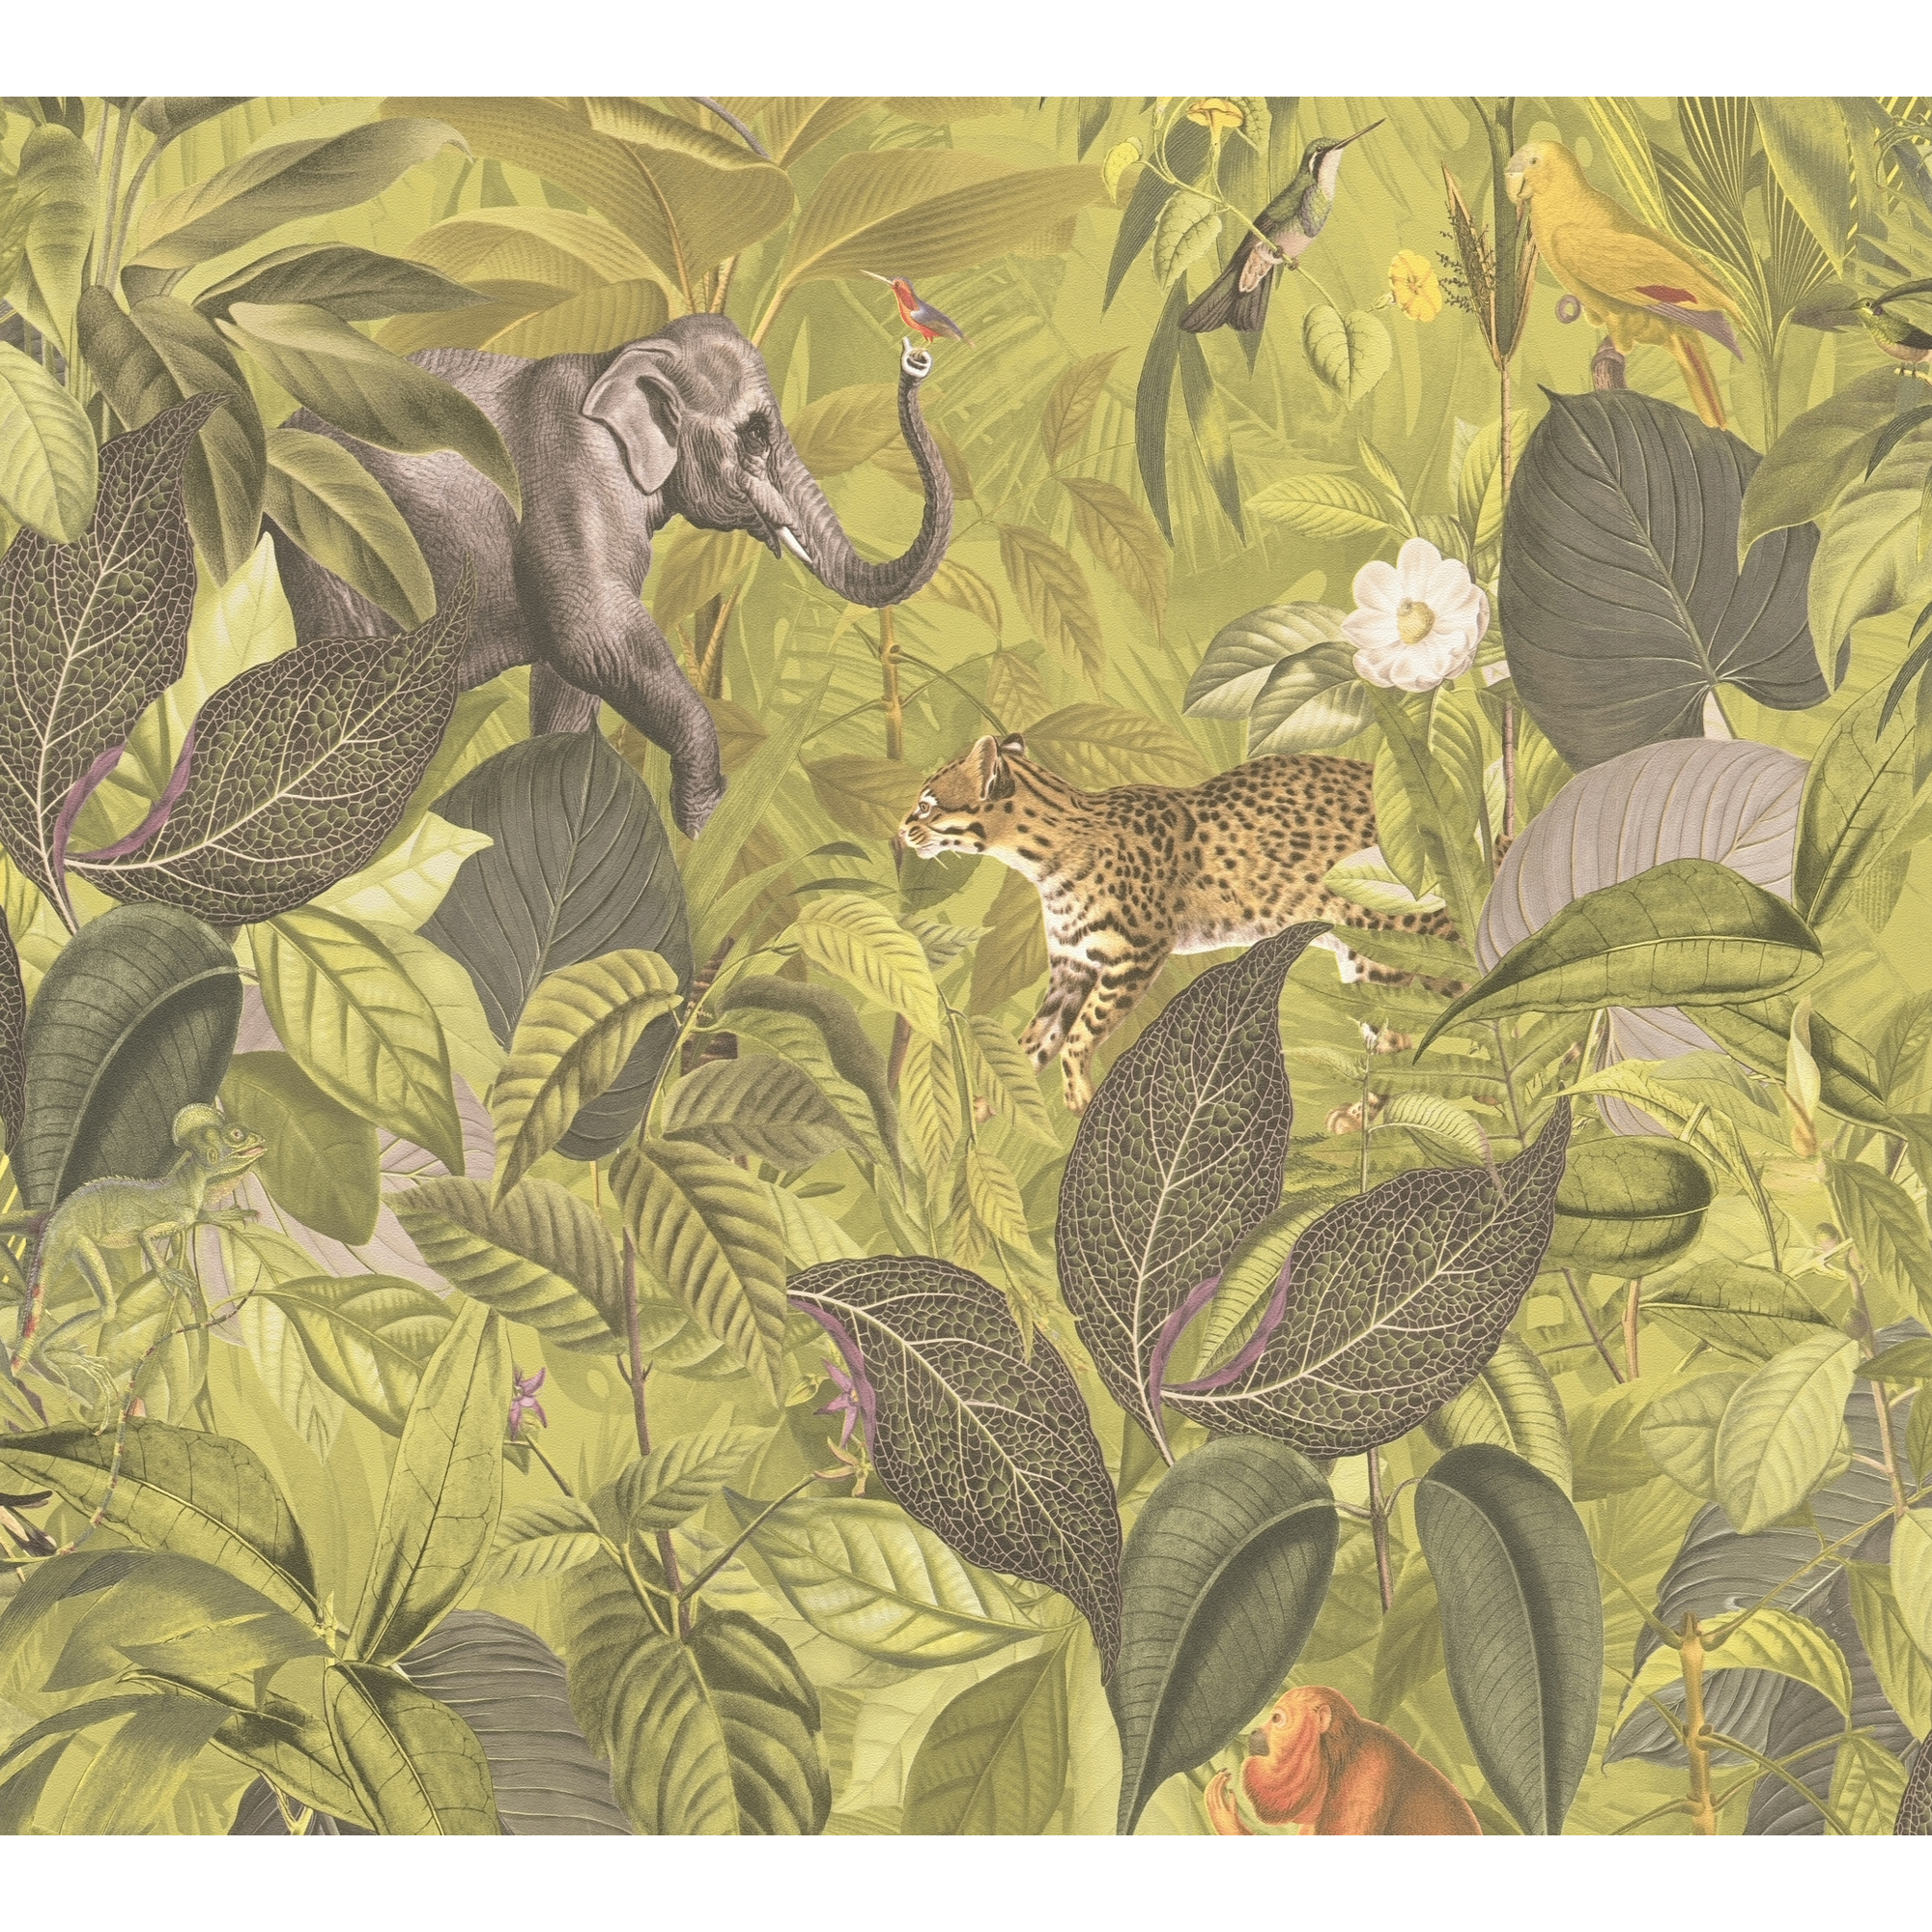 Vliestapete 'Pint Walls' Dschungel grün/braun 10,05 x 0,53 m + product picture